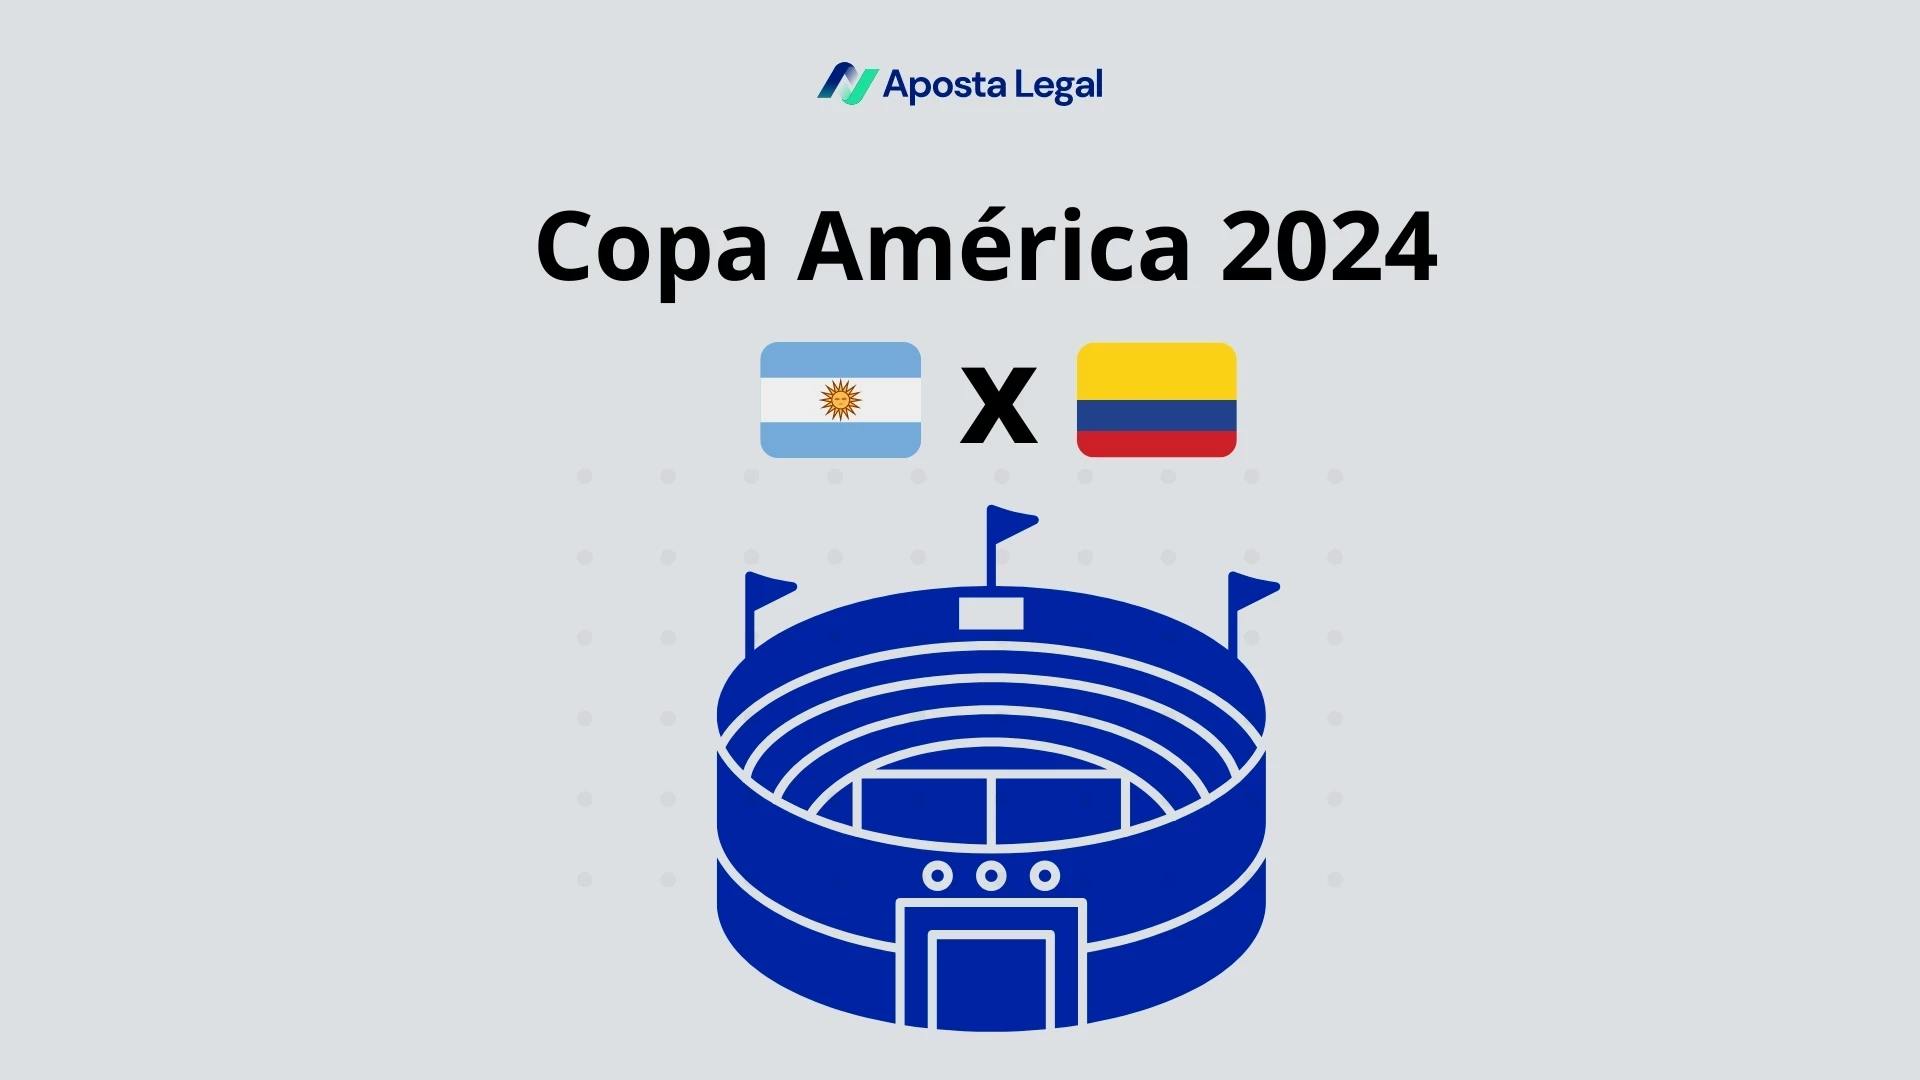 fundo cinza com estádio azul e titulo copa america 2024 com as bandeiras da argentina e colombia lado a lado